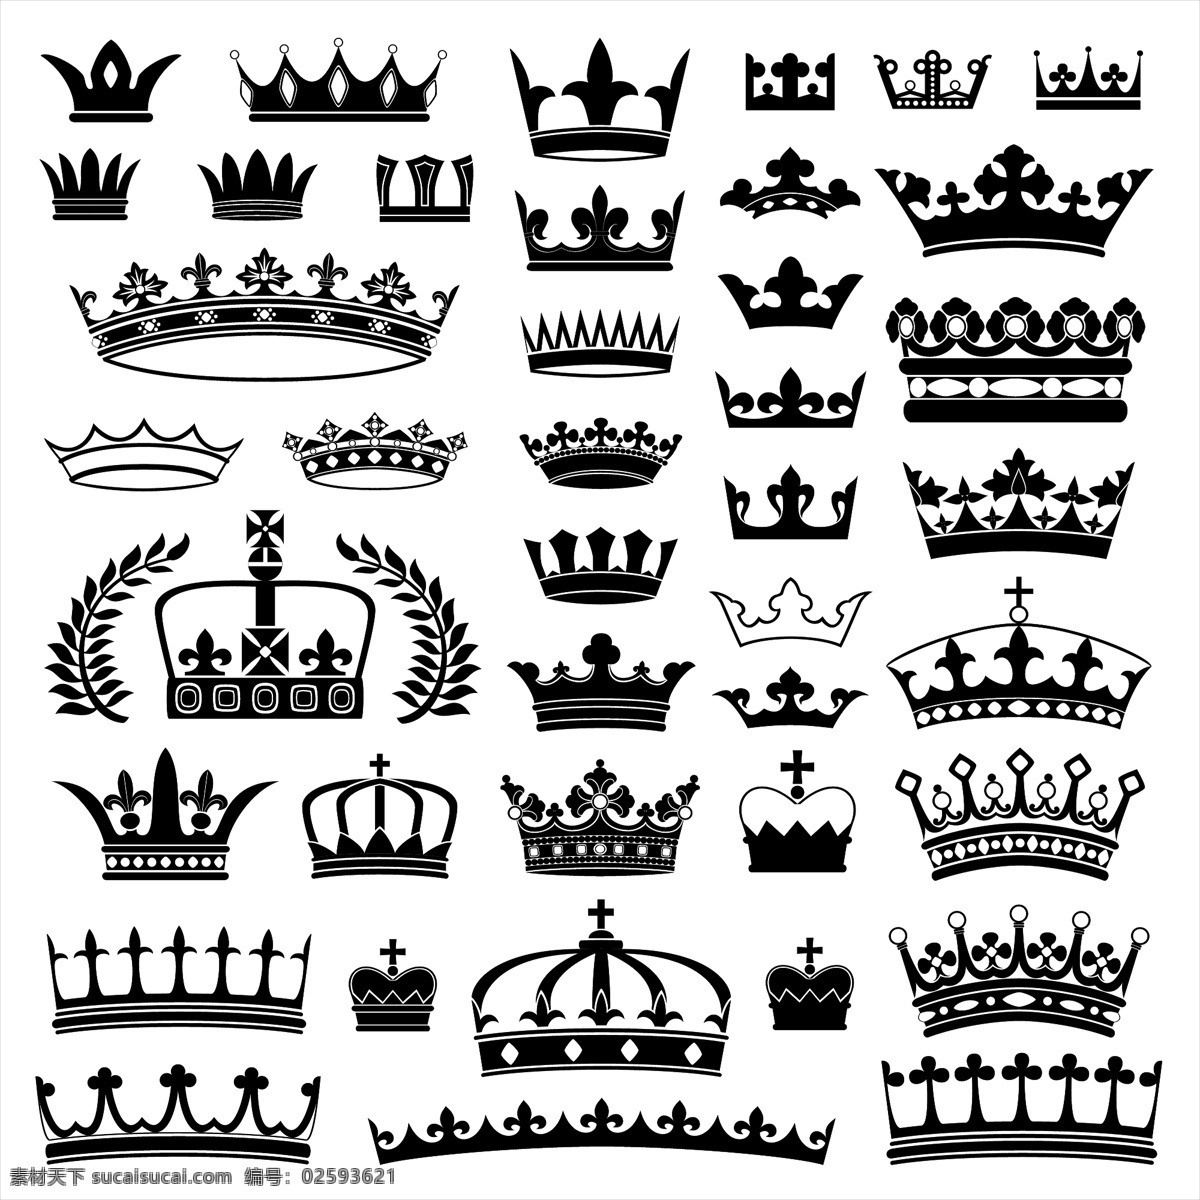 皇冠图案 皇冠 图案 模板下载 创意皇冠 矢量皇冠 贵族皇冠 皇冠图标 珠宝服饰 生活百科 矢量素材 白色